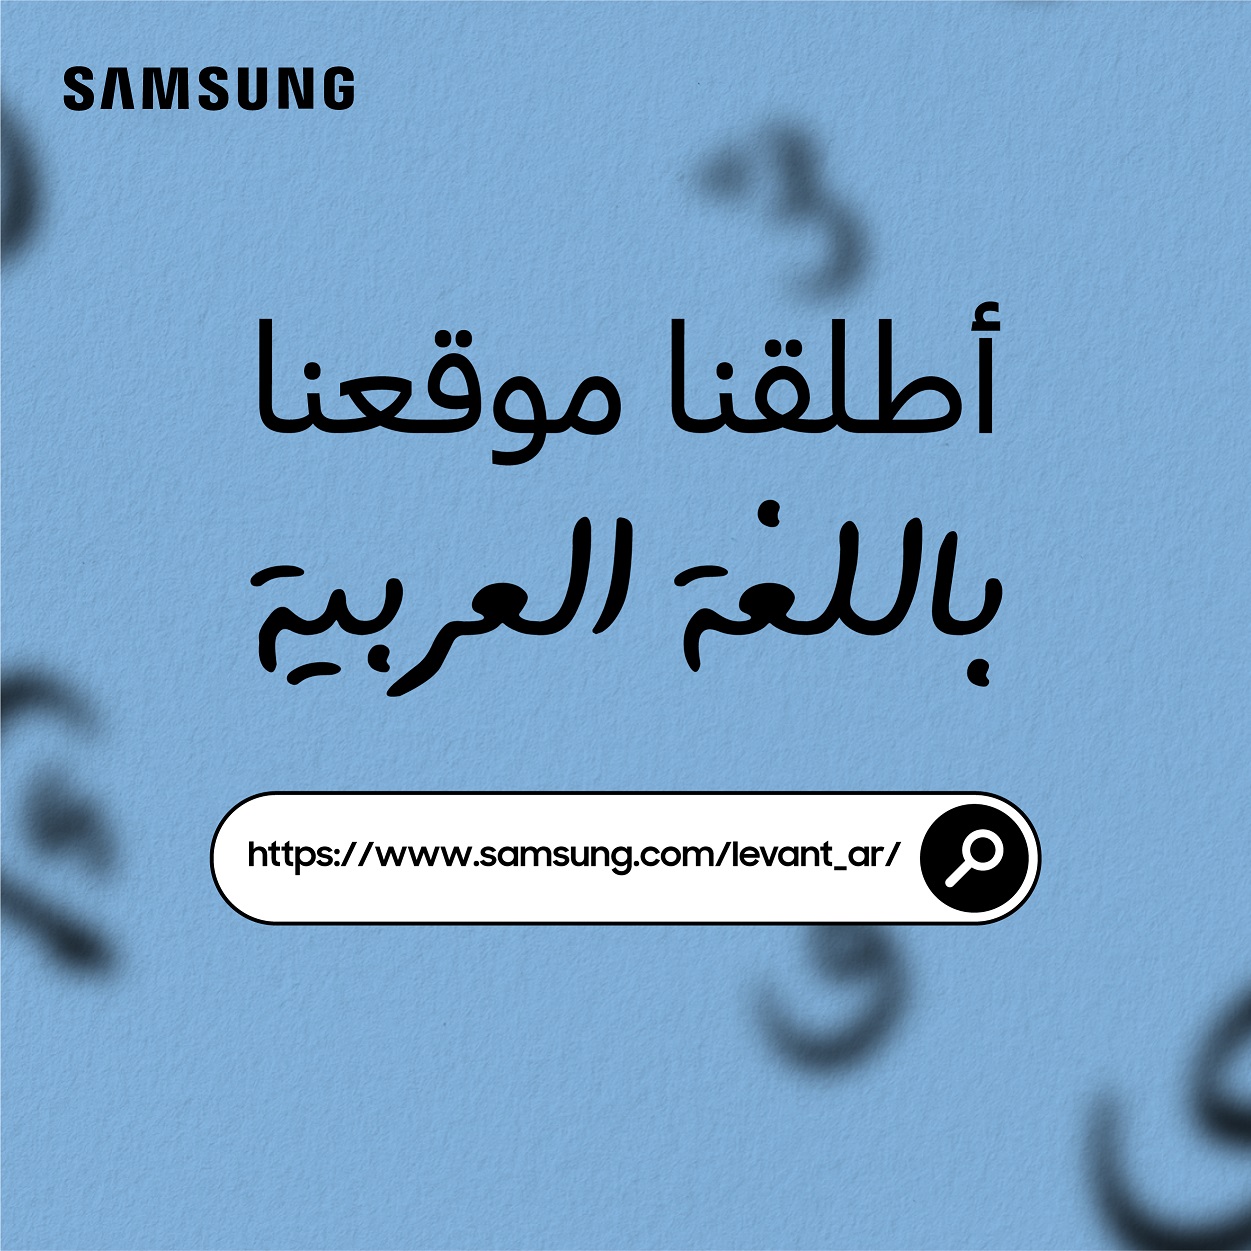 سامسونج الكترونيكس المشرق العربي تتيح موقعها باللغة العربية